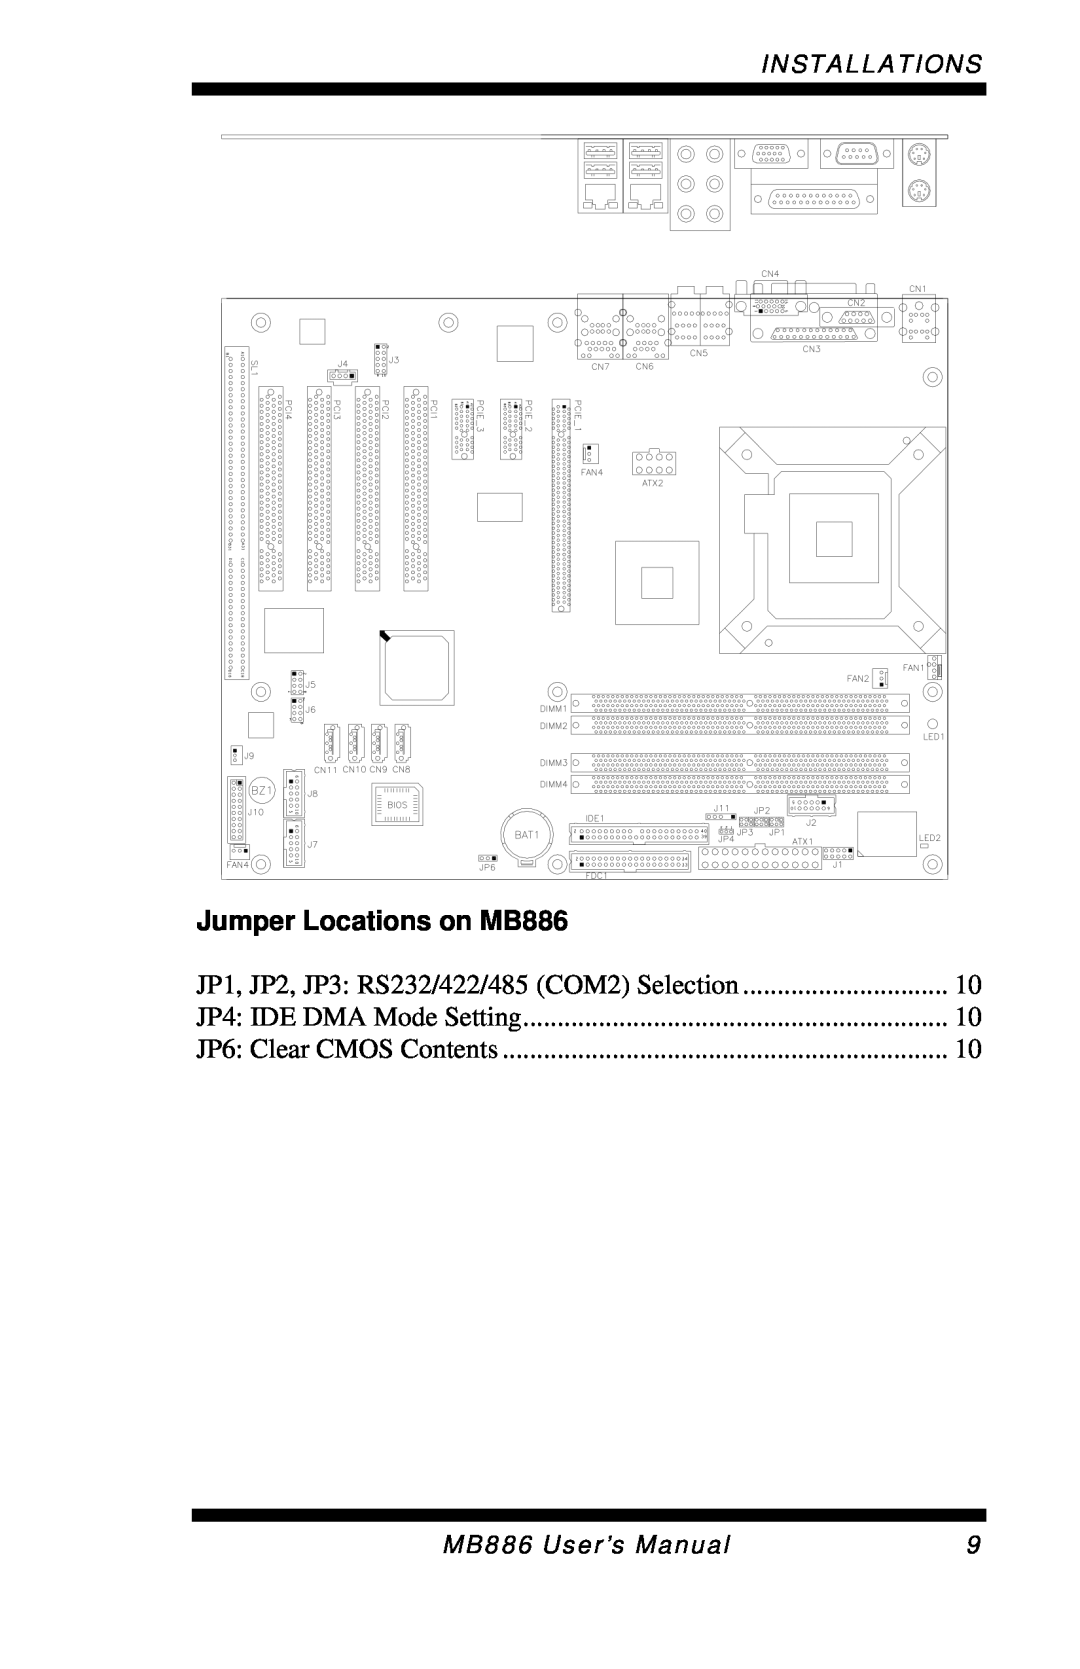 Intel user manual Jumper Locations on MB886, Installations 